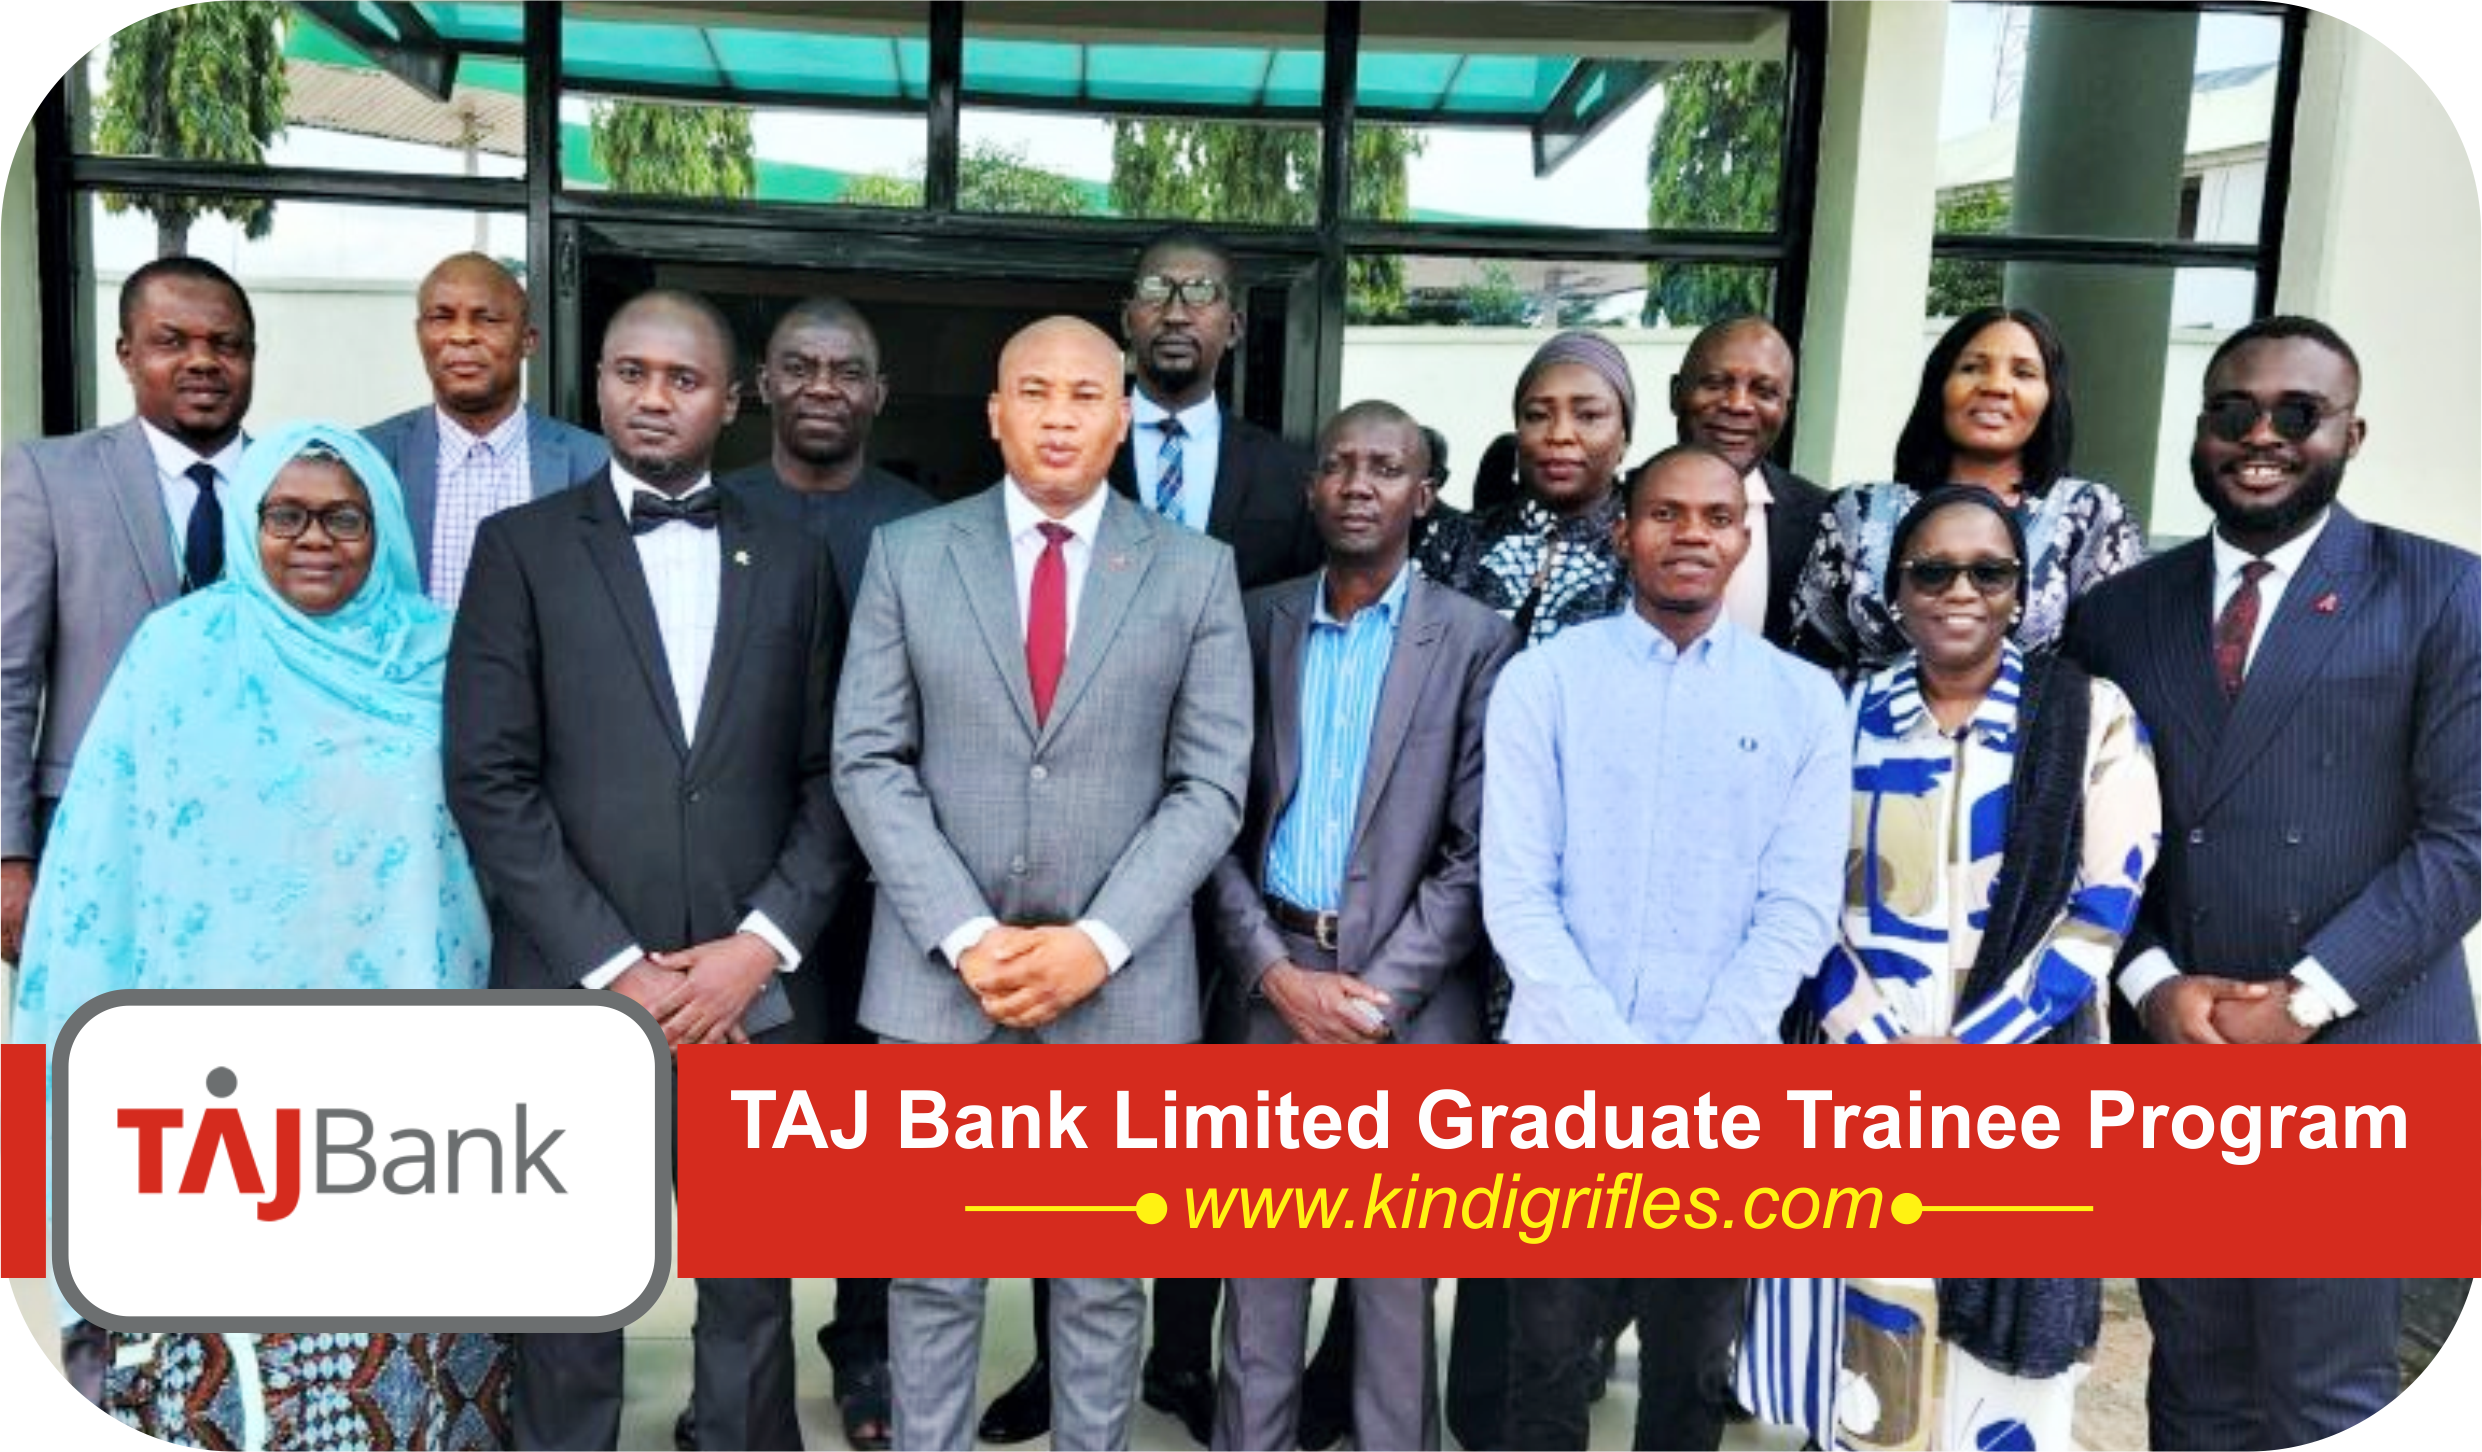 TAJ Bank Limited Graduate Trainee Program